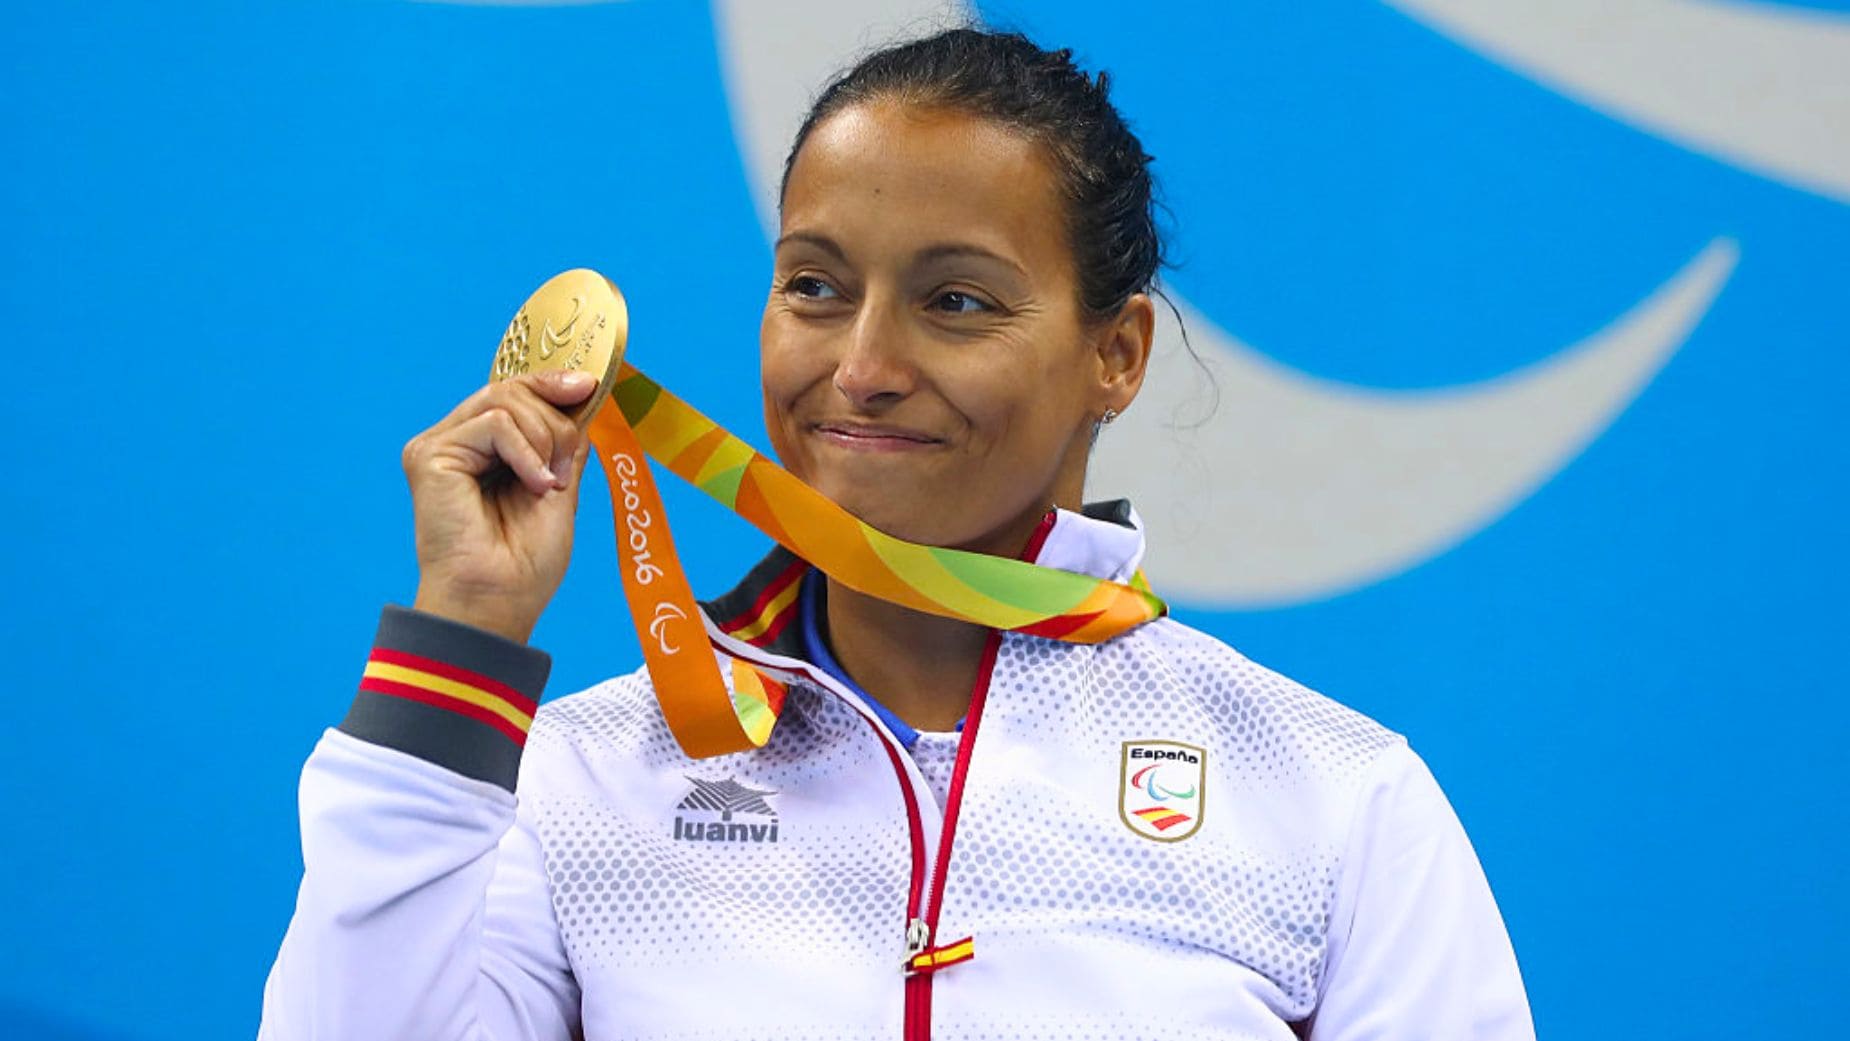 Teresa Perales posa con una medalla de oro conseguida en unos Juegos Paralímpicos